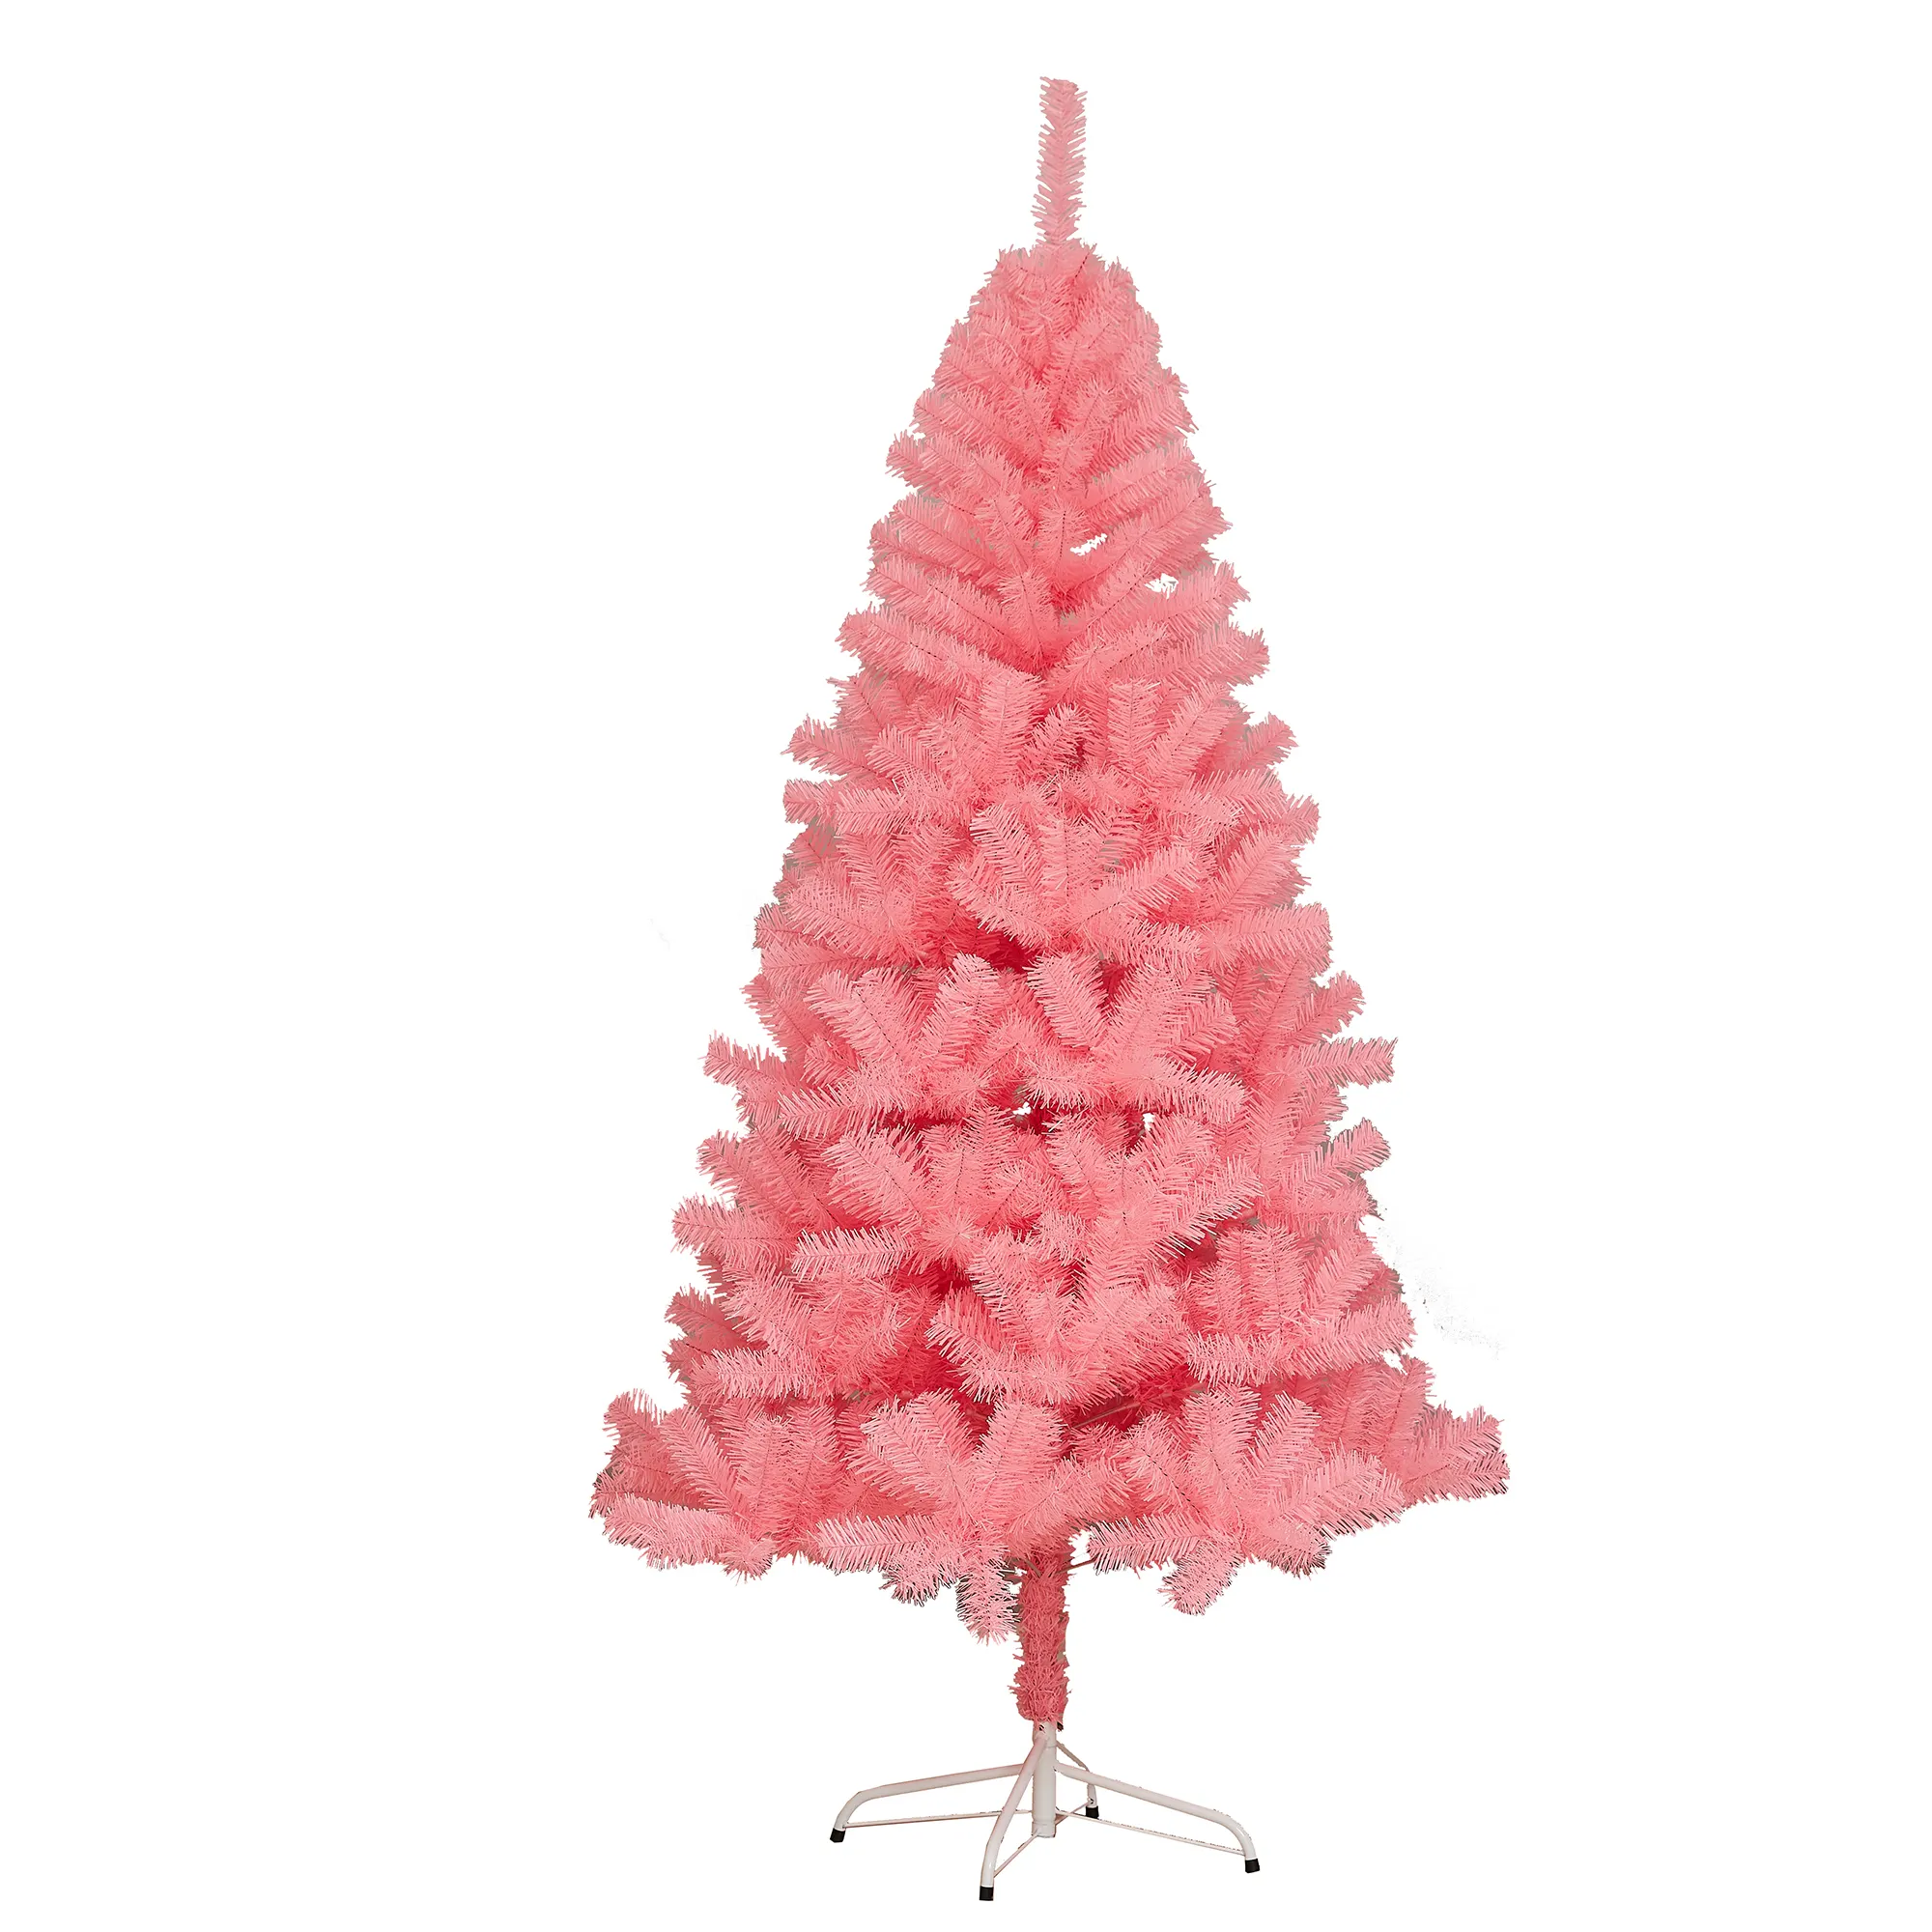 Màu Hồng Nhân Tạo Cây Giáng Sinh Bản Lề Cấu Trúc Cây Giáng Sinh 210Cm Với Kim Loại Đứng, 100% Mới Chất Liệu PVC, Xmas Cây